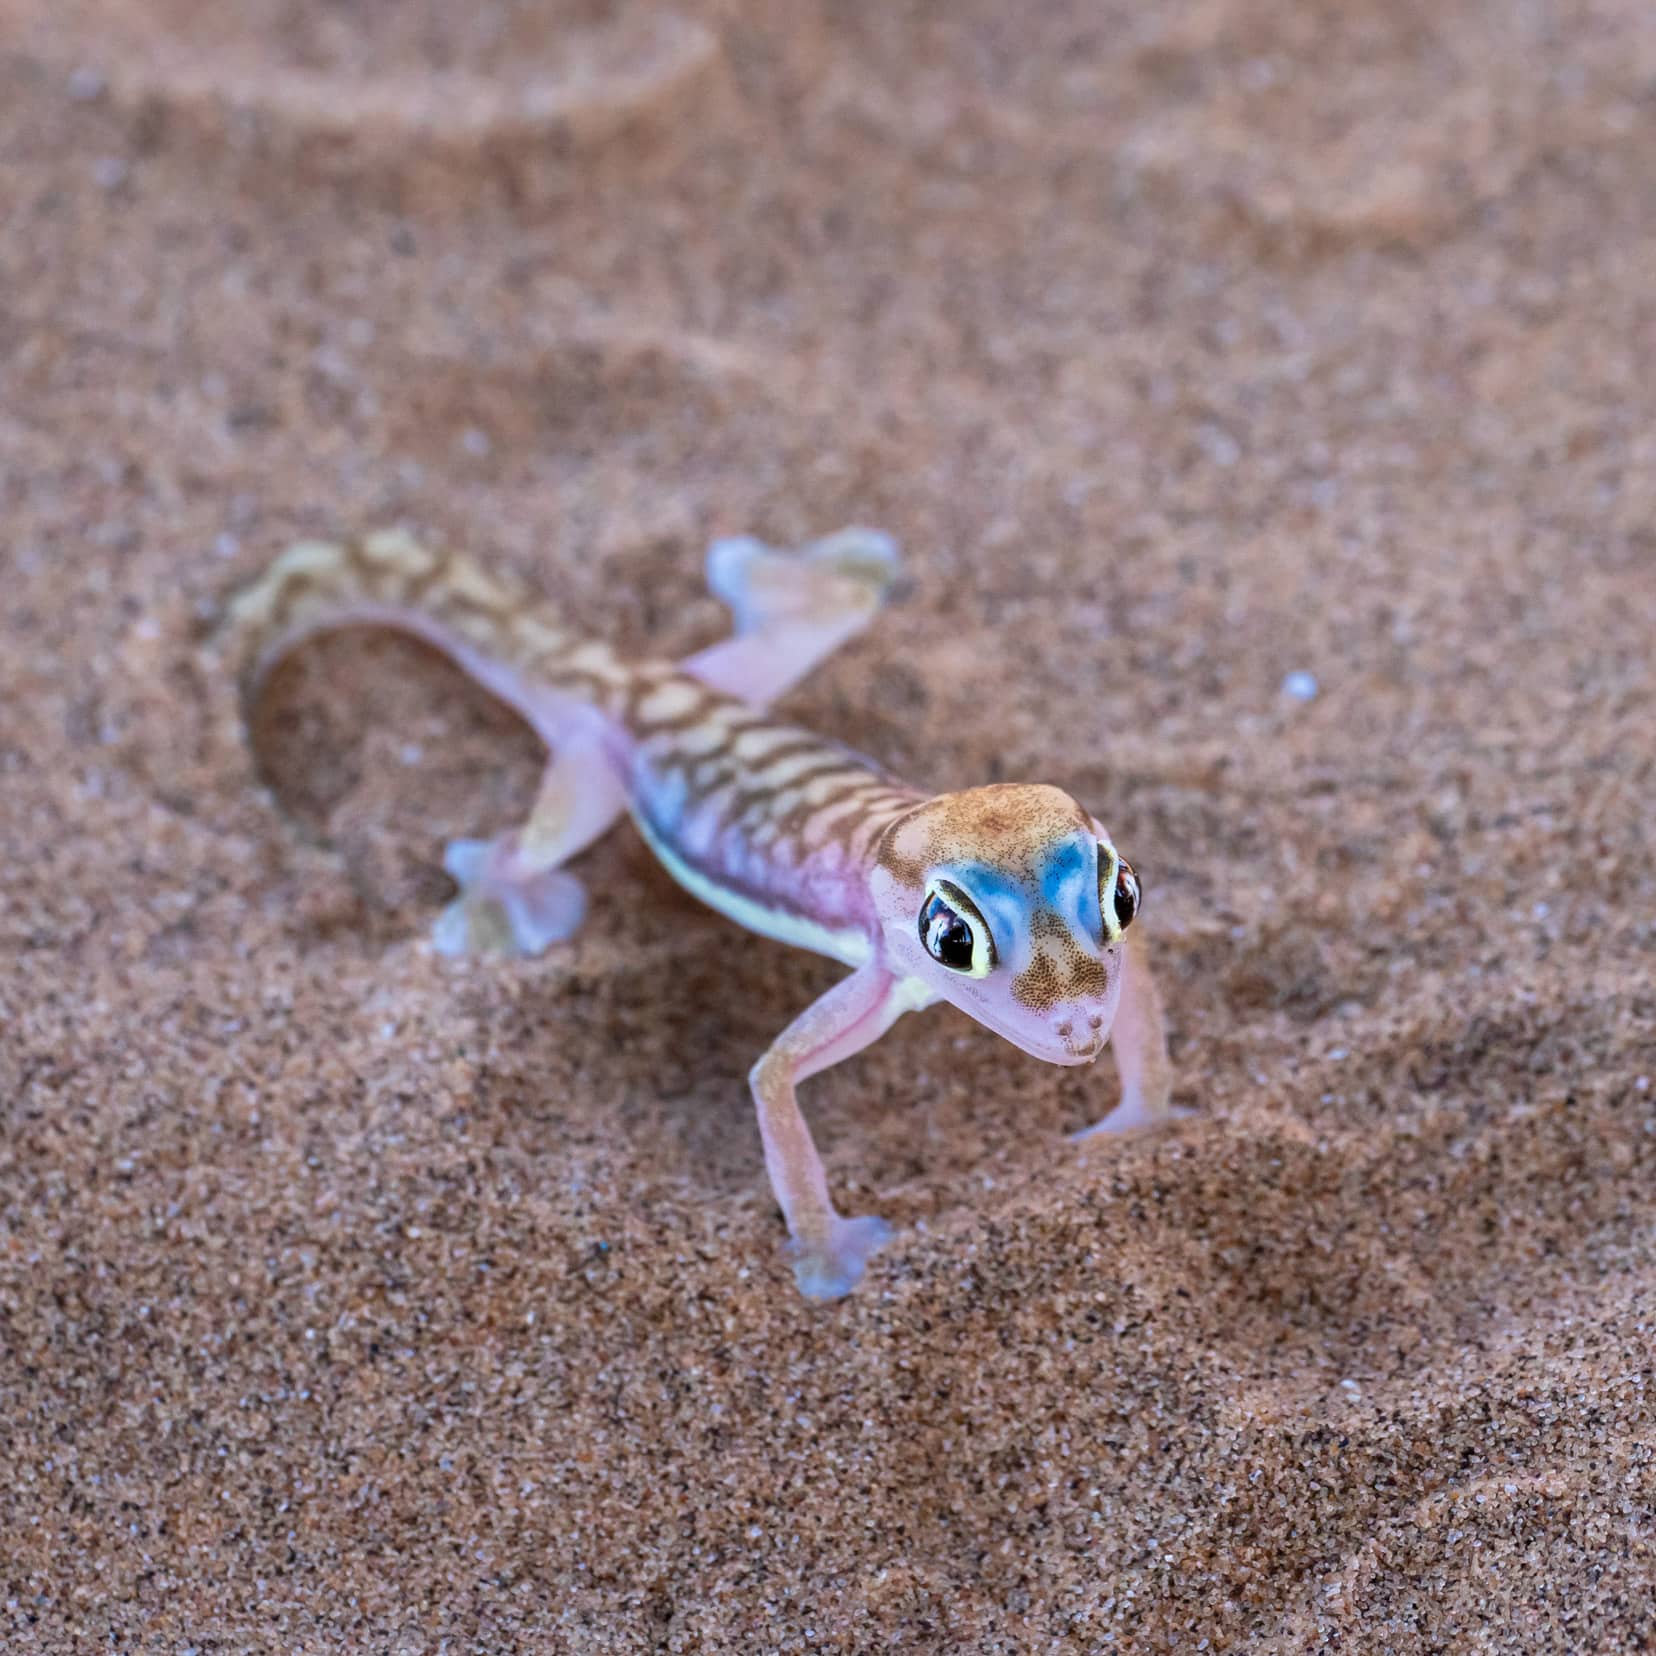 Namib gecko on sand